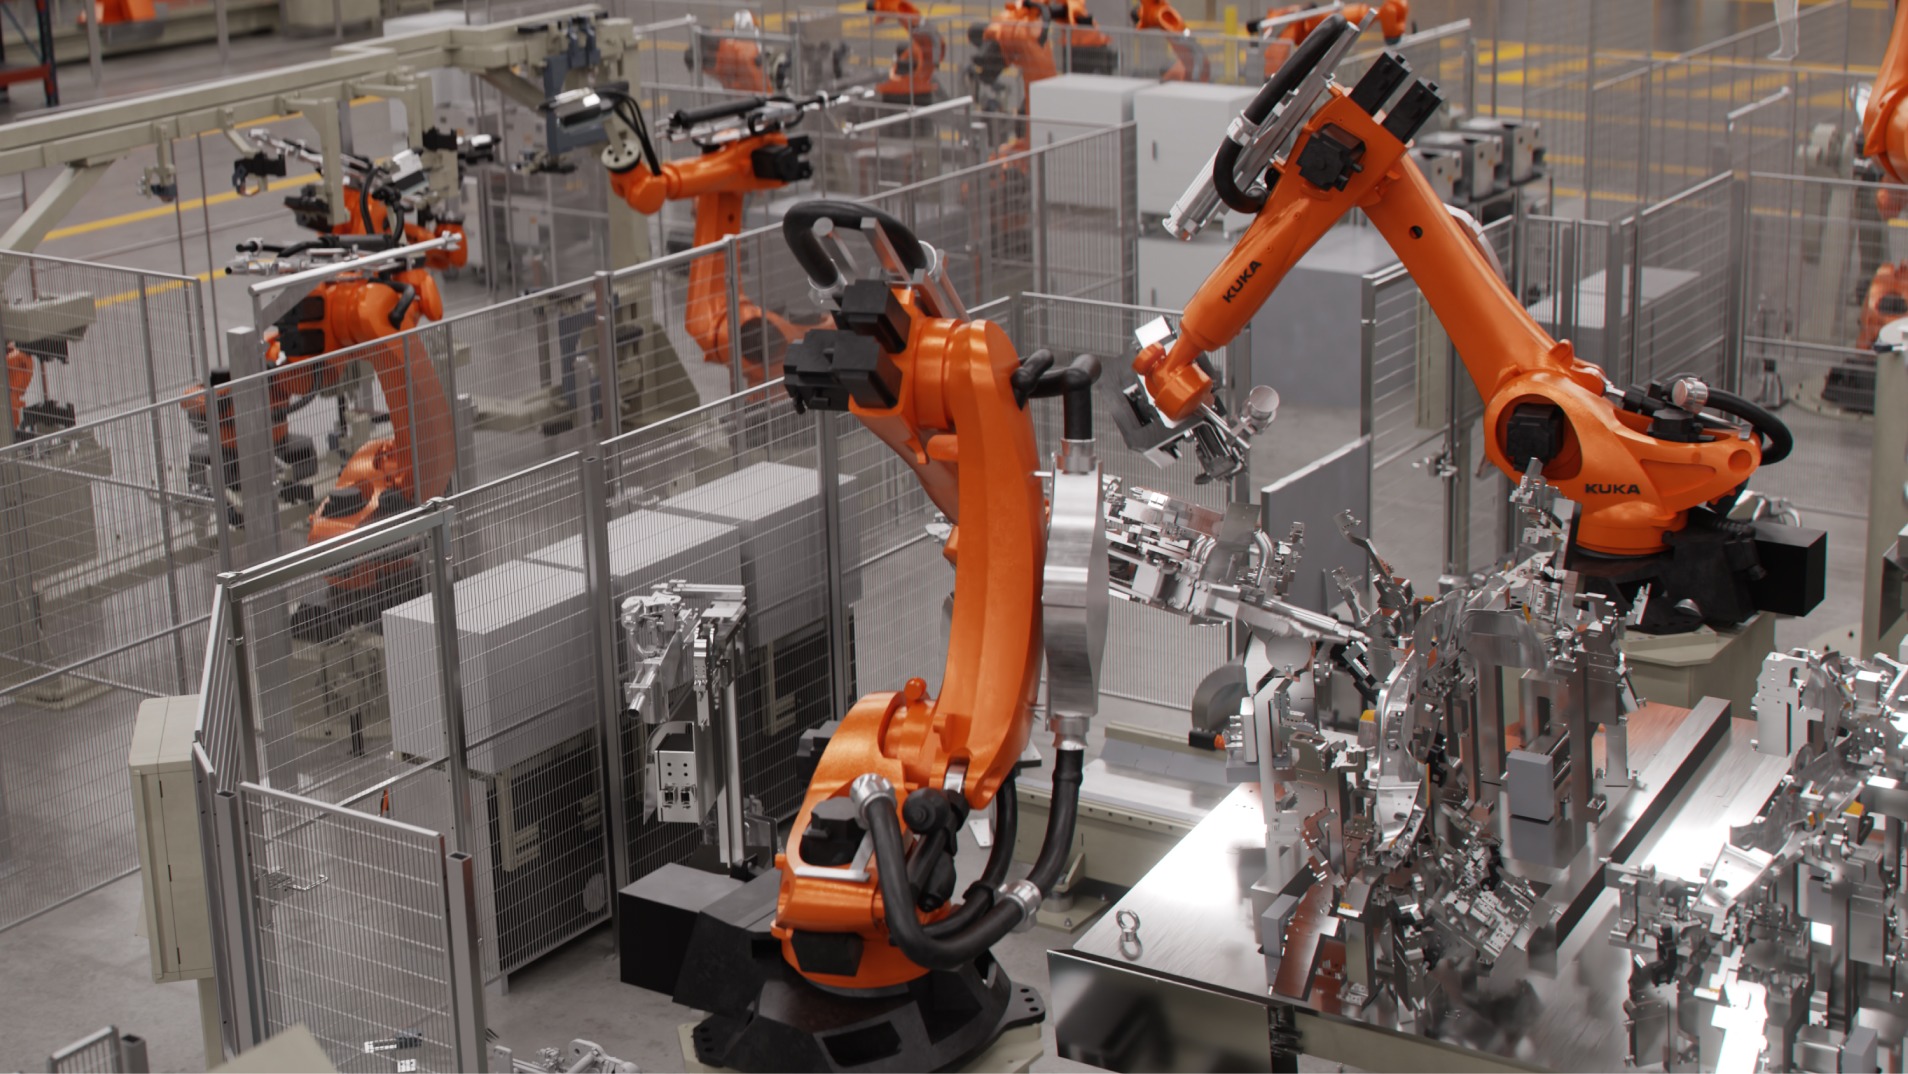 Enrutamiento y reenrutamiento dinámicos de robots para una carga eficiente de camiones